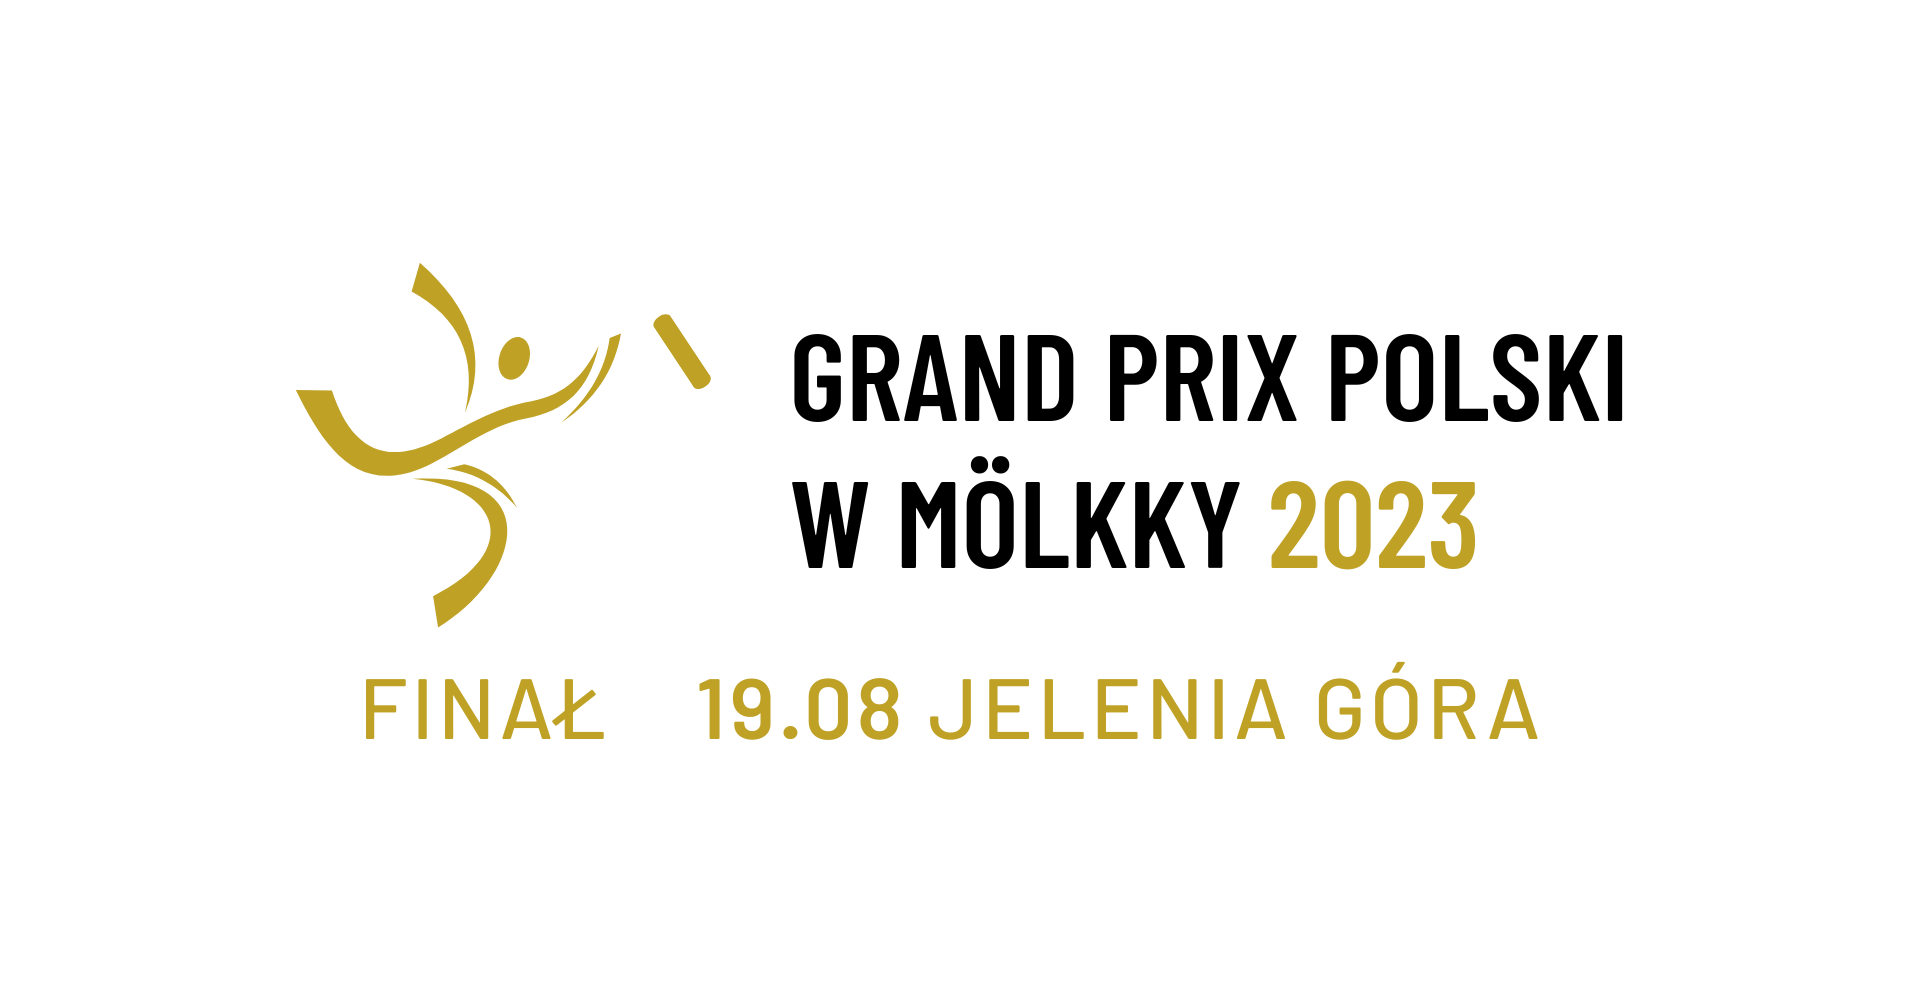 Grand Prix of Poland - event 5/5 (FINAL)